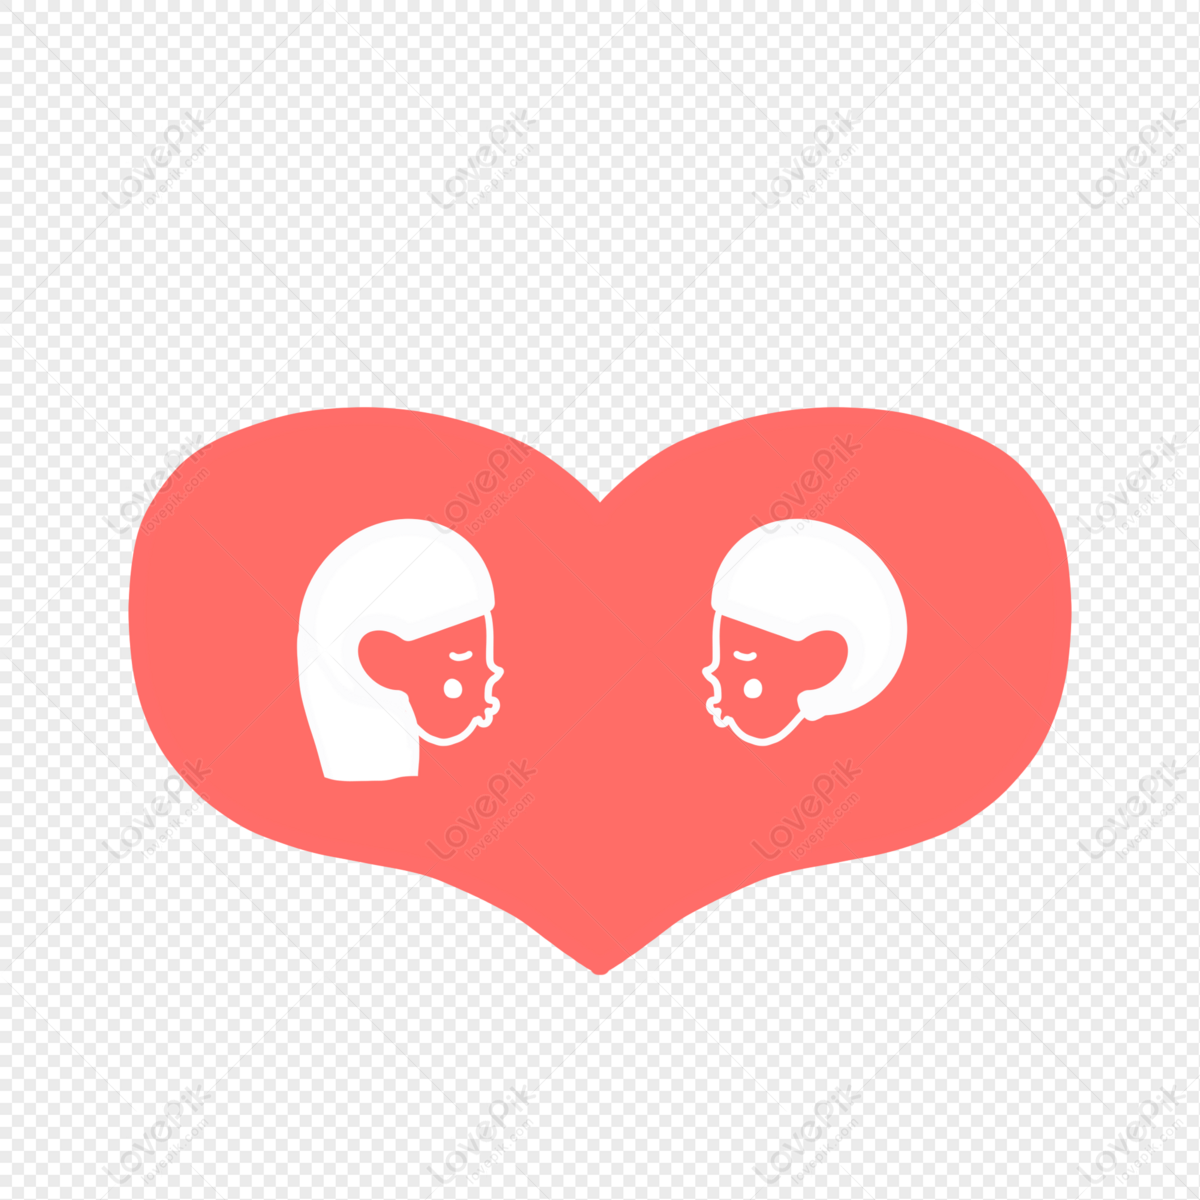 Cặp đôi hôn nhau là biểu tượng cho tình yêu đích thực, và hình ảnh cặp đôi hôn nhau Lovepik PNG miễn phí là một lựa chọn tuyệt vời để thể hiện sự yêu thương của bạn. Bạn sẽ thấy tình cảm đầy nồng nhiệt trong bức ảnh, và bạn sẽ không muốn bỏ lỡ cơ hội tải về hình ảnh này.